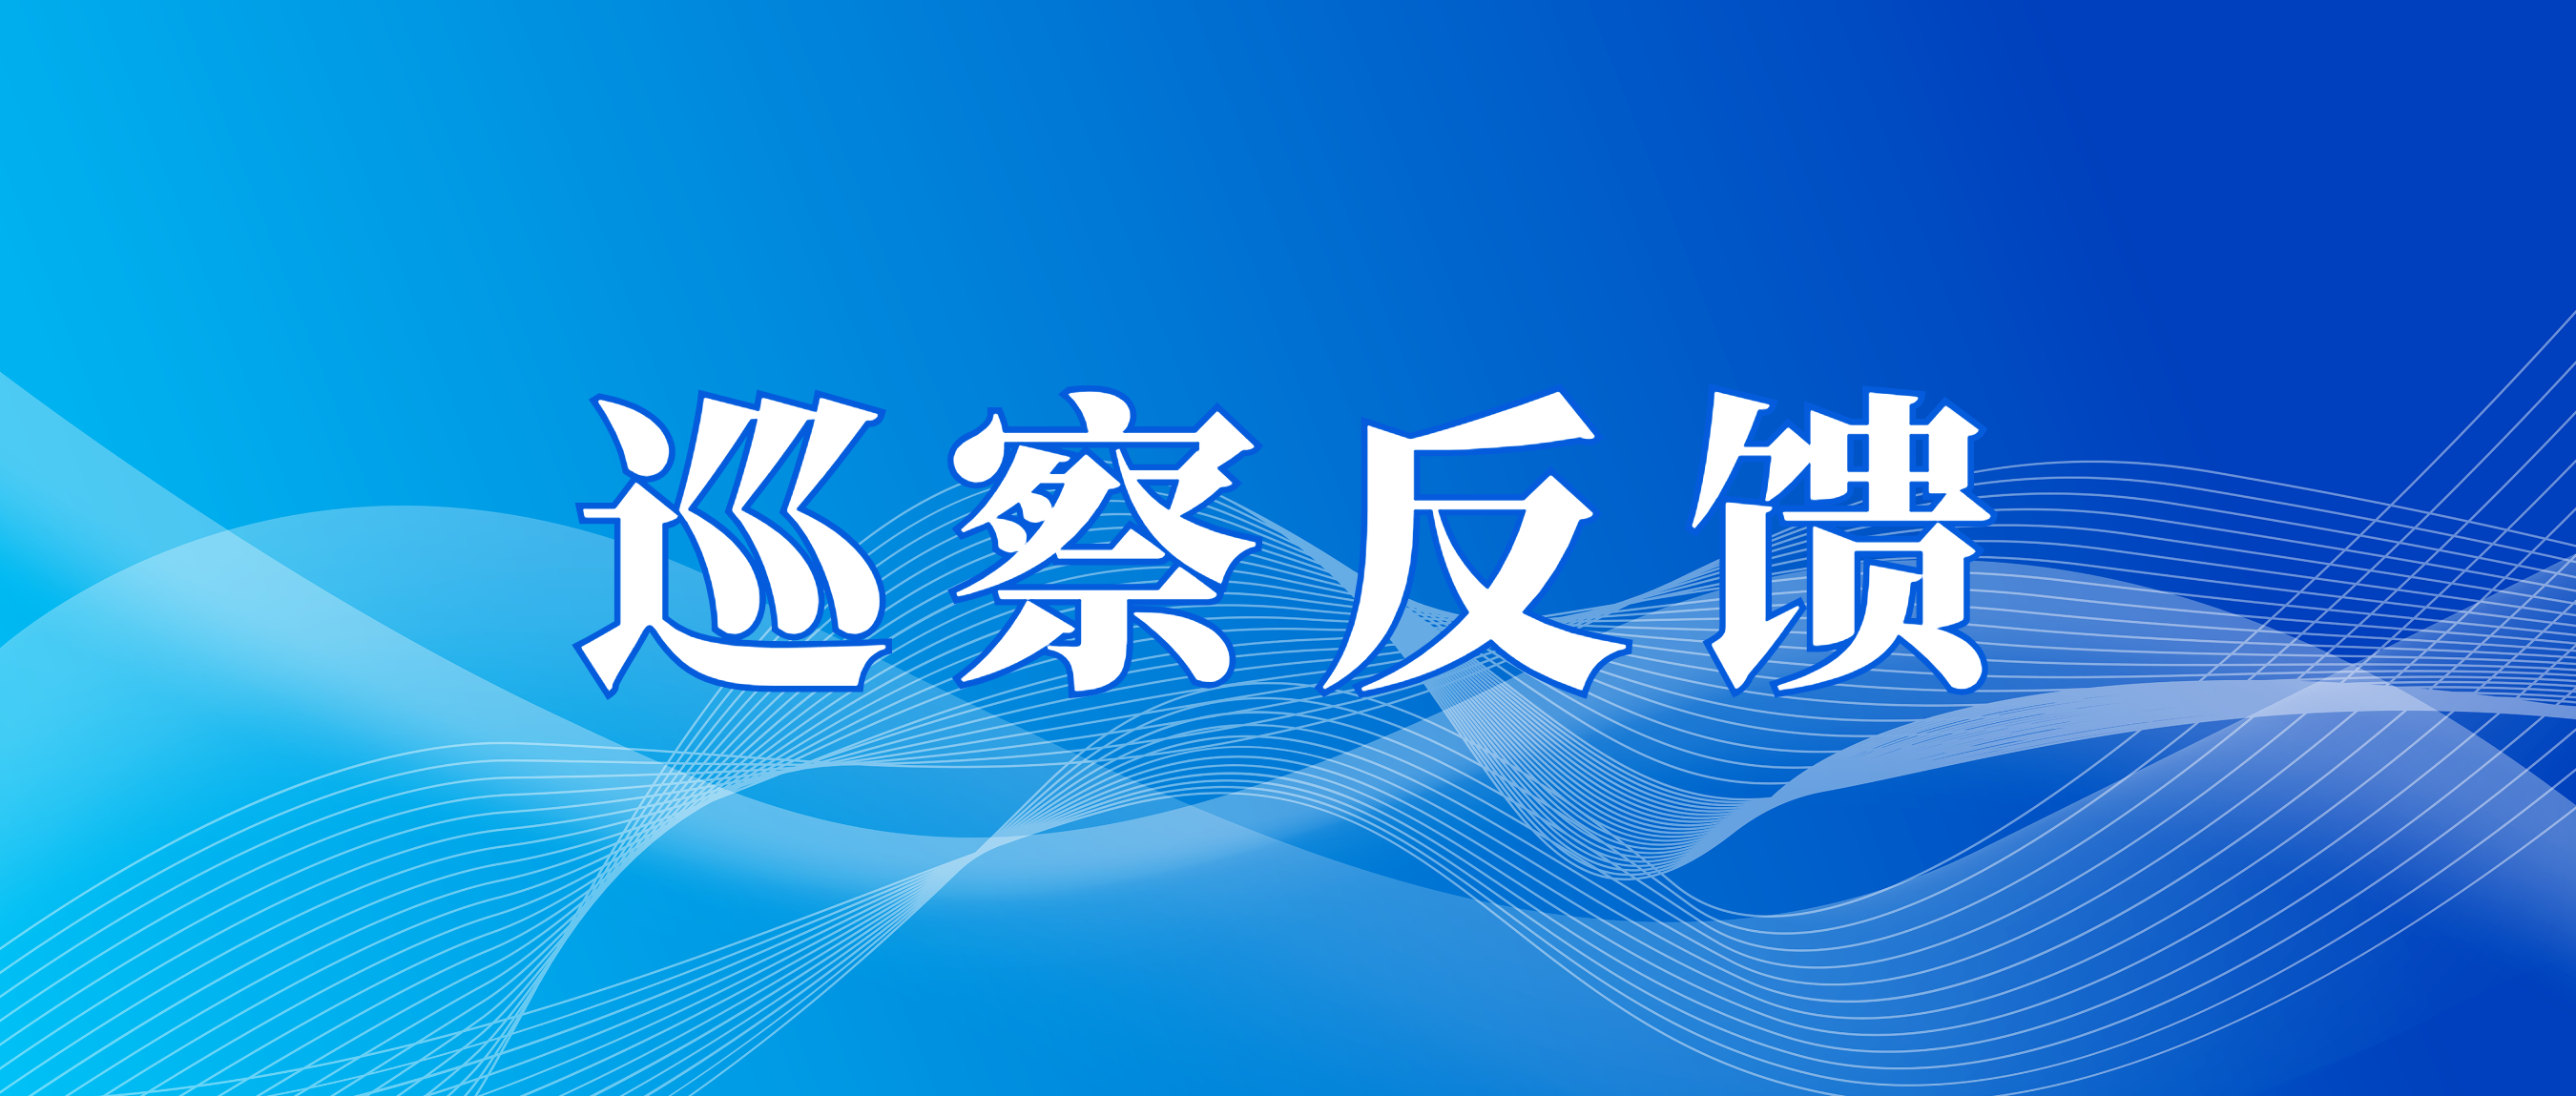 市国资委党委第三巡察组向广州产投资本党总支反馈巡察情况